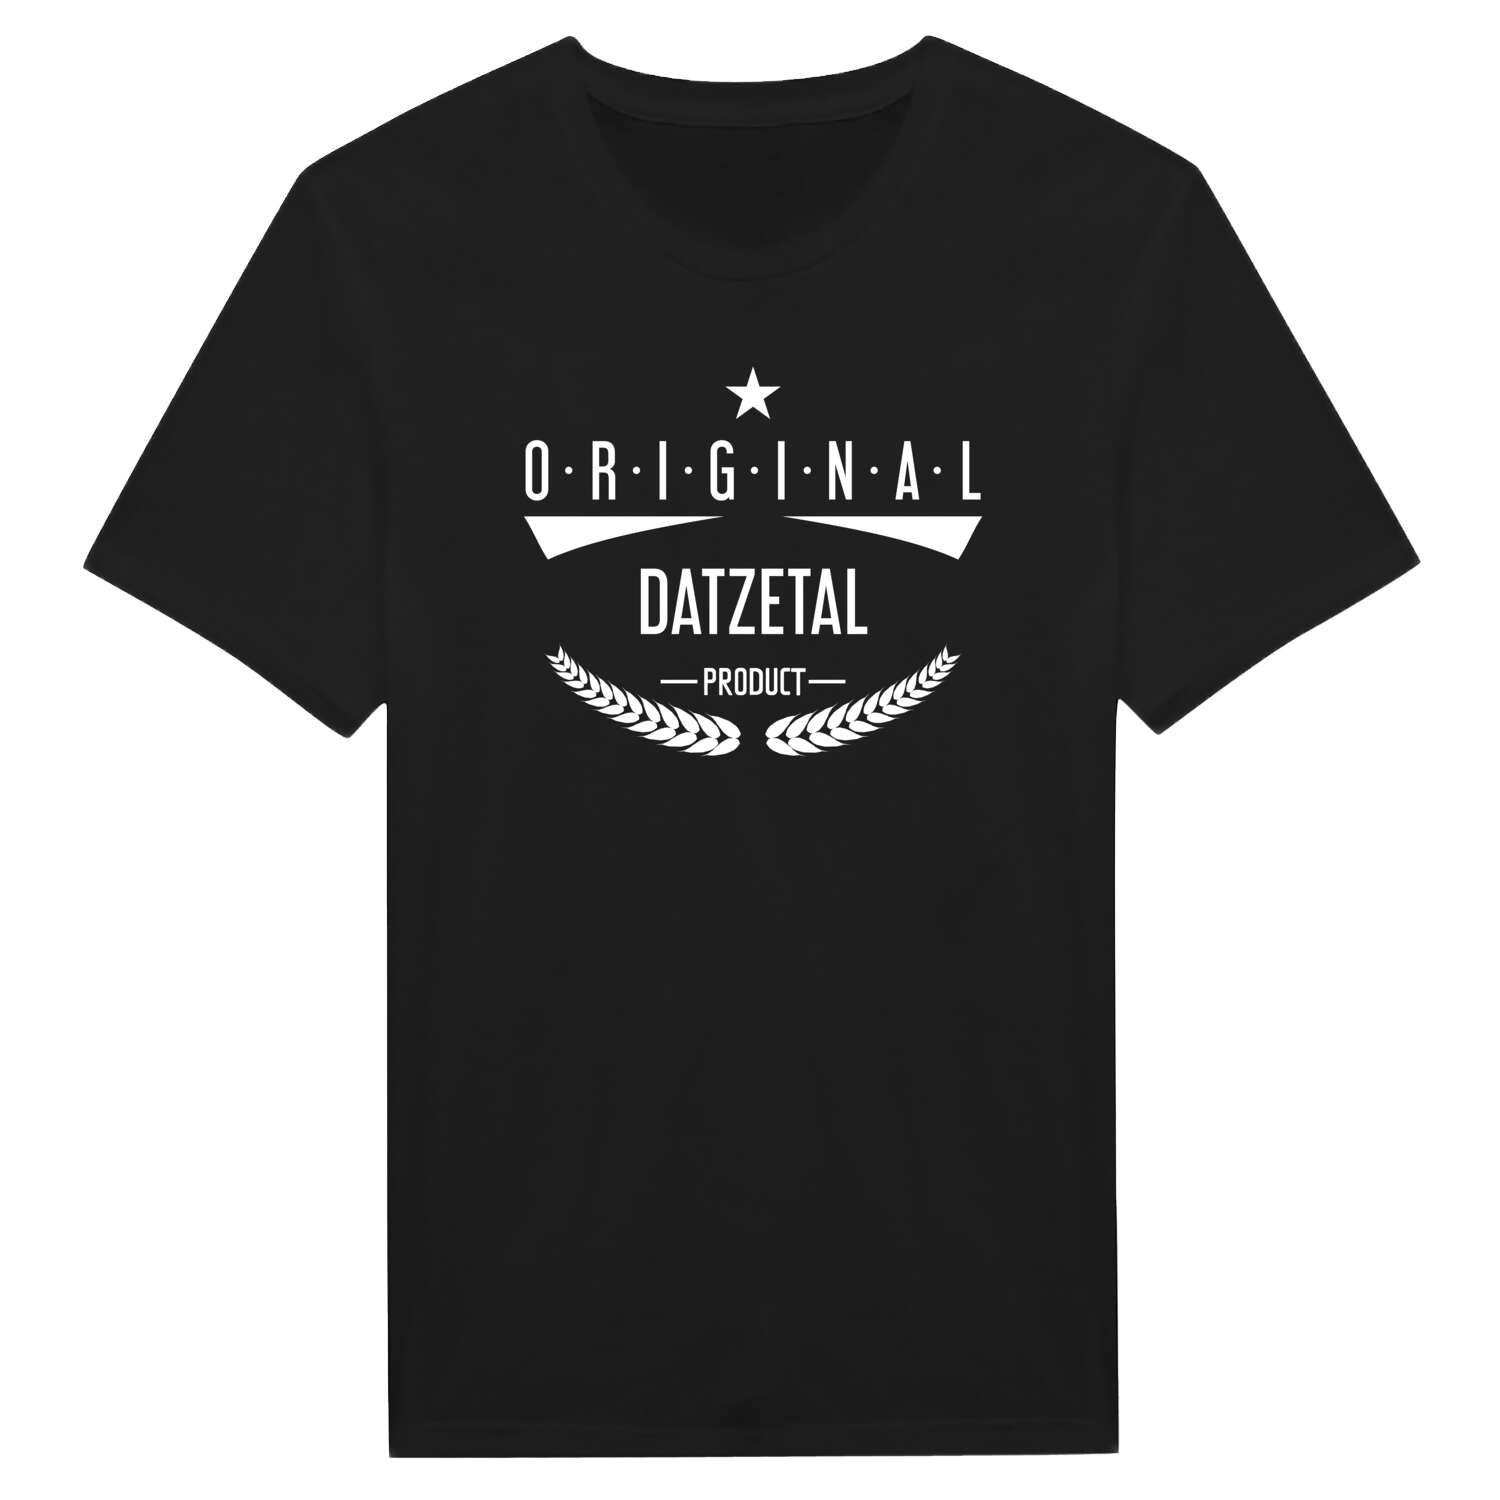 Datzetal T-Shirt »Original Product«